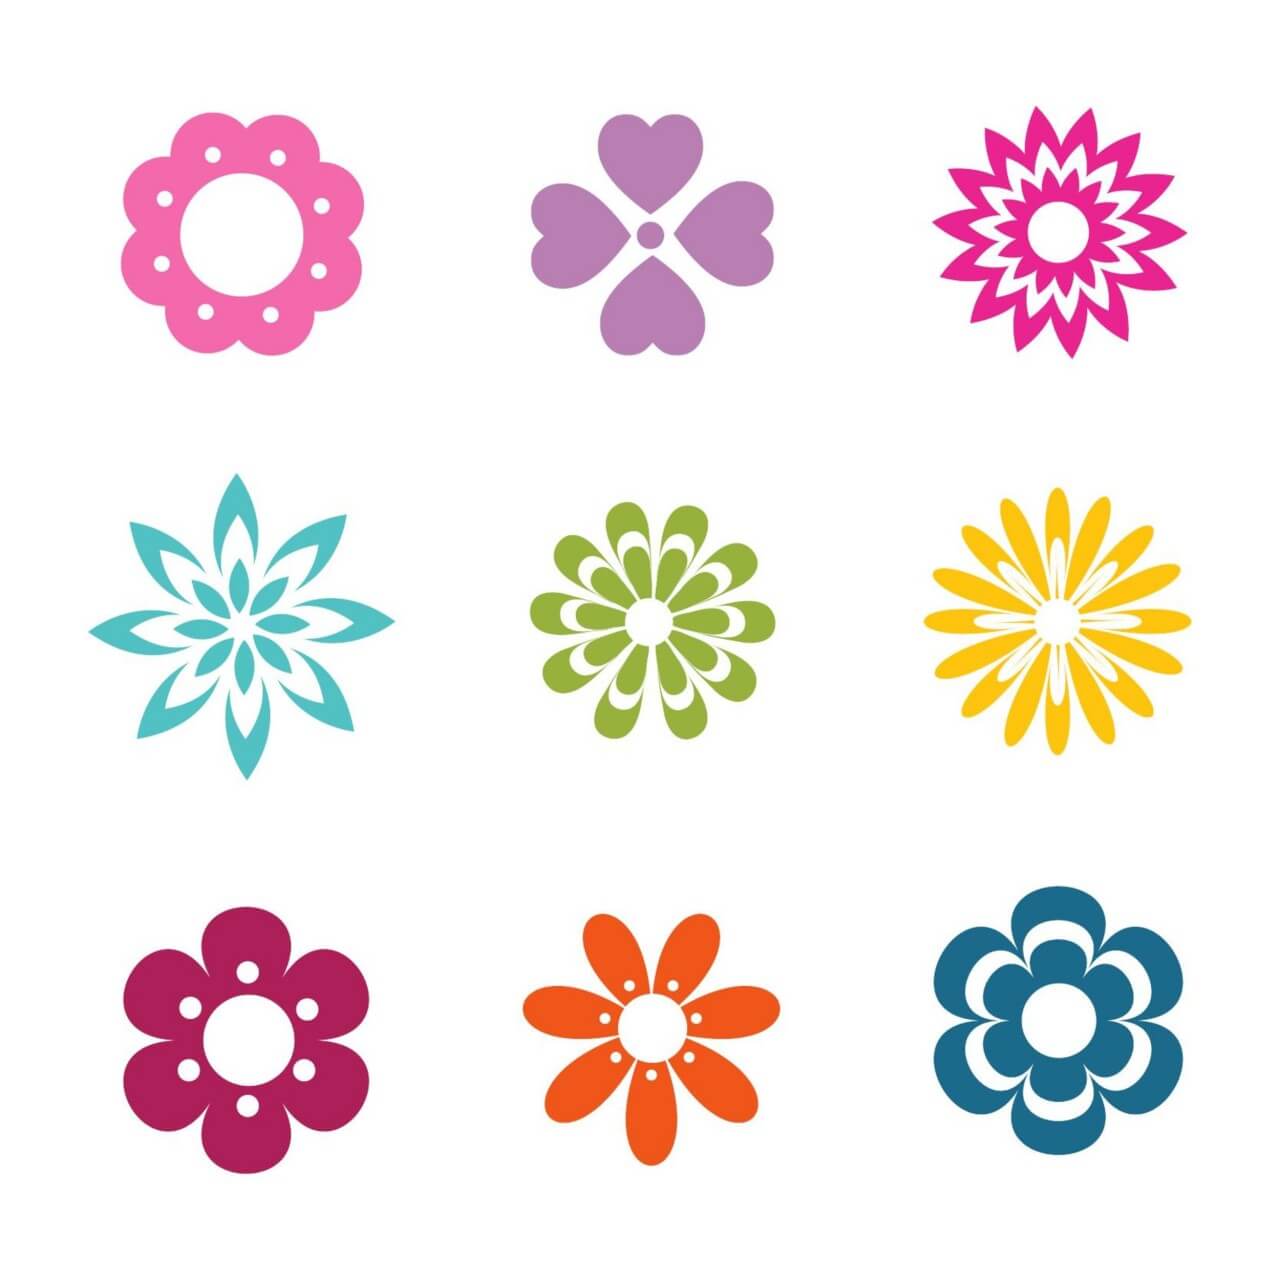 download flower symbols for illustrator